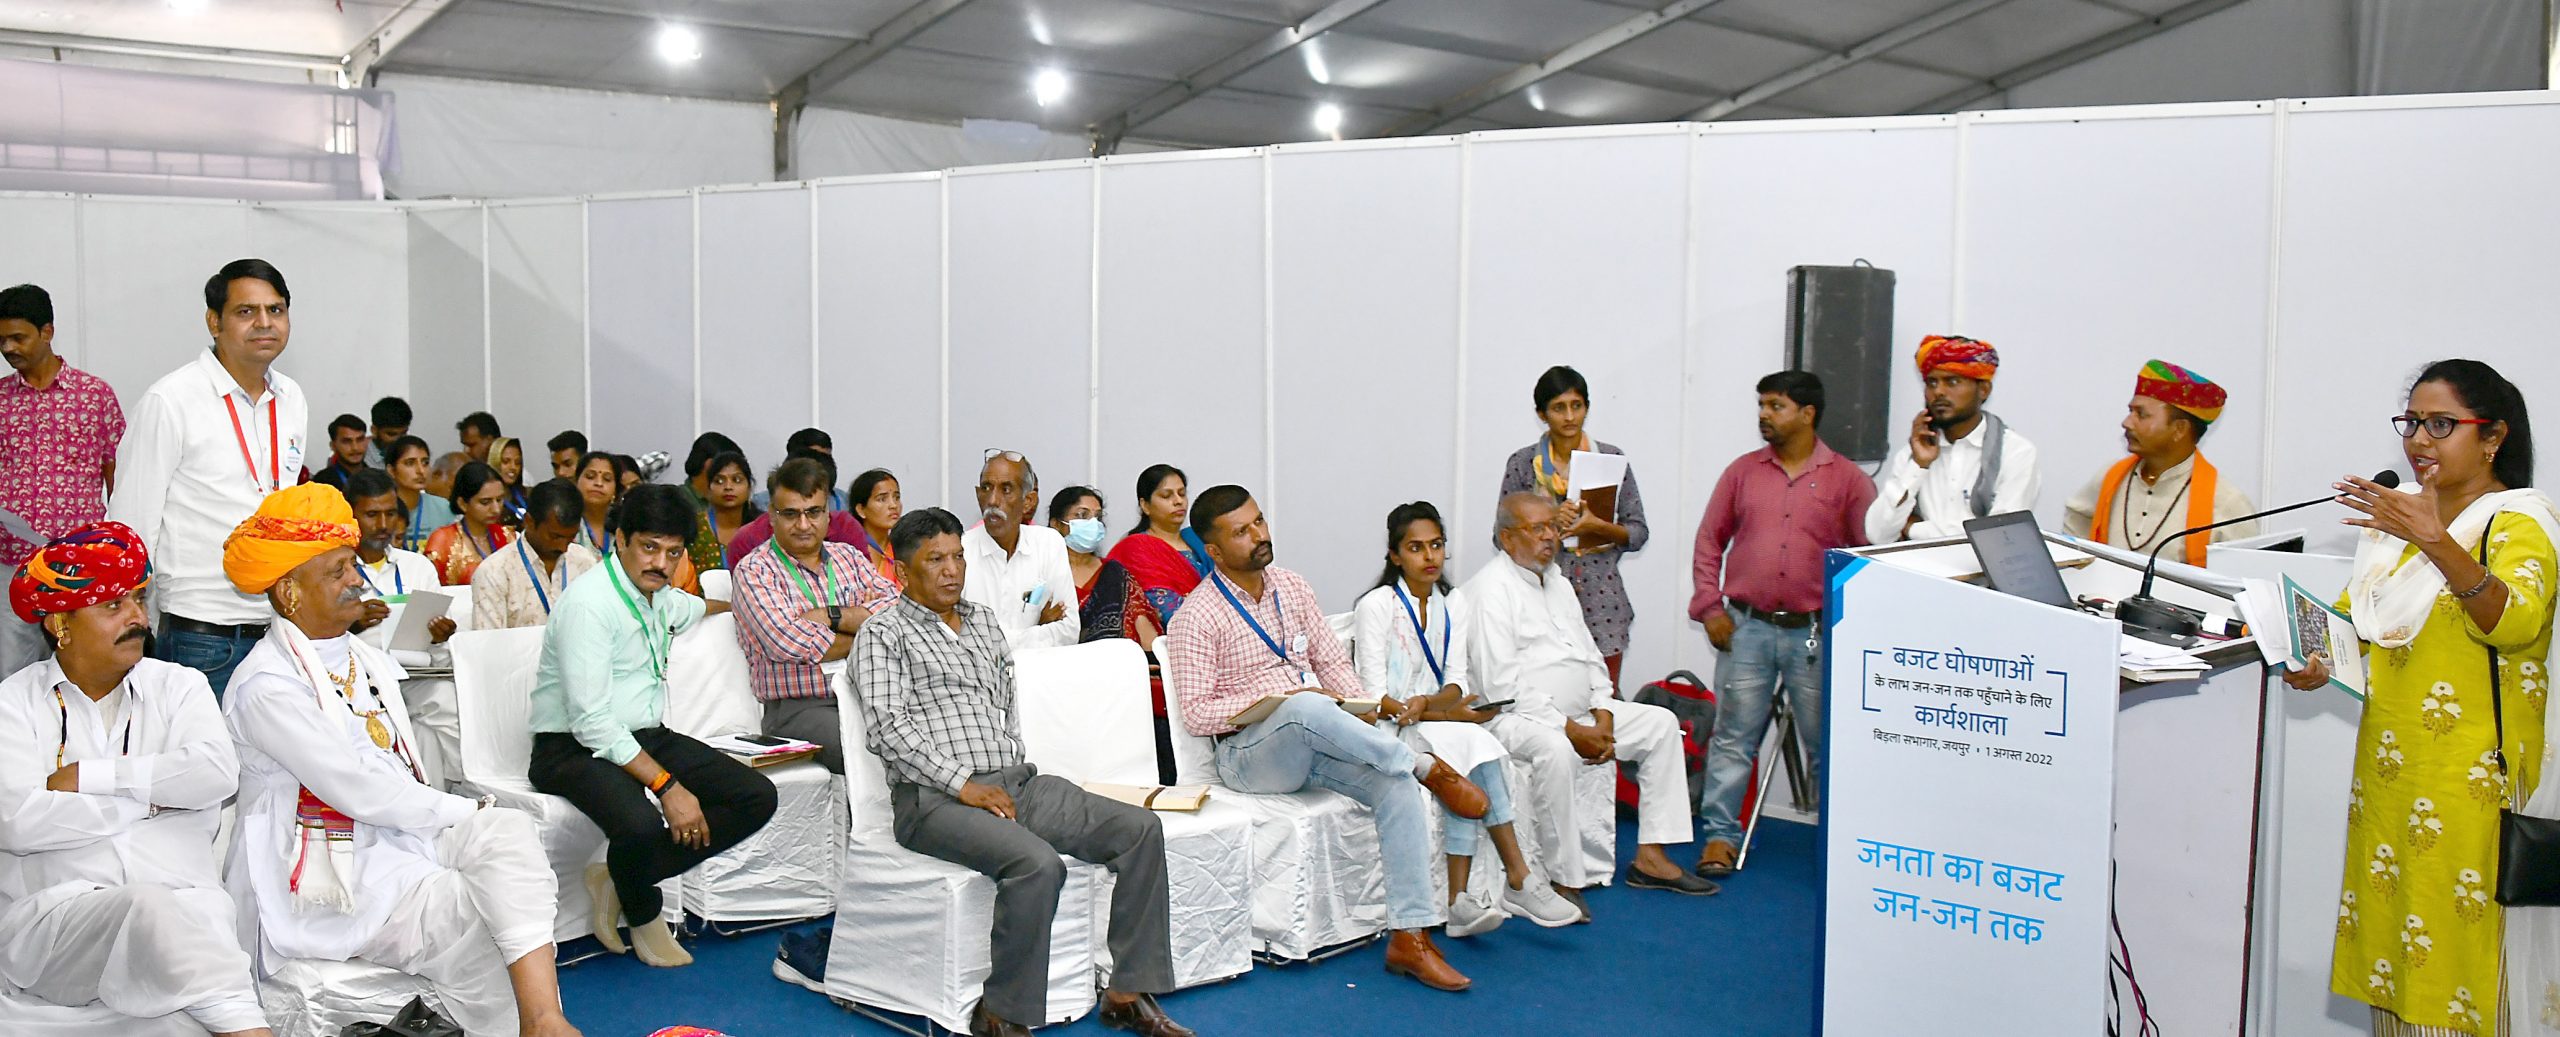 workshop rajasthan budget